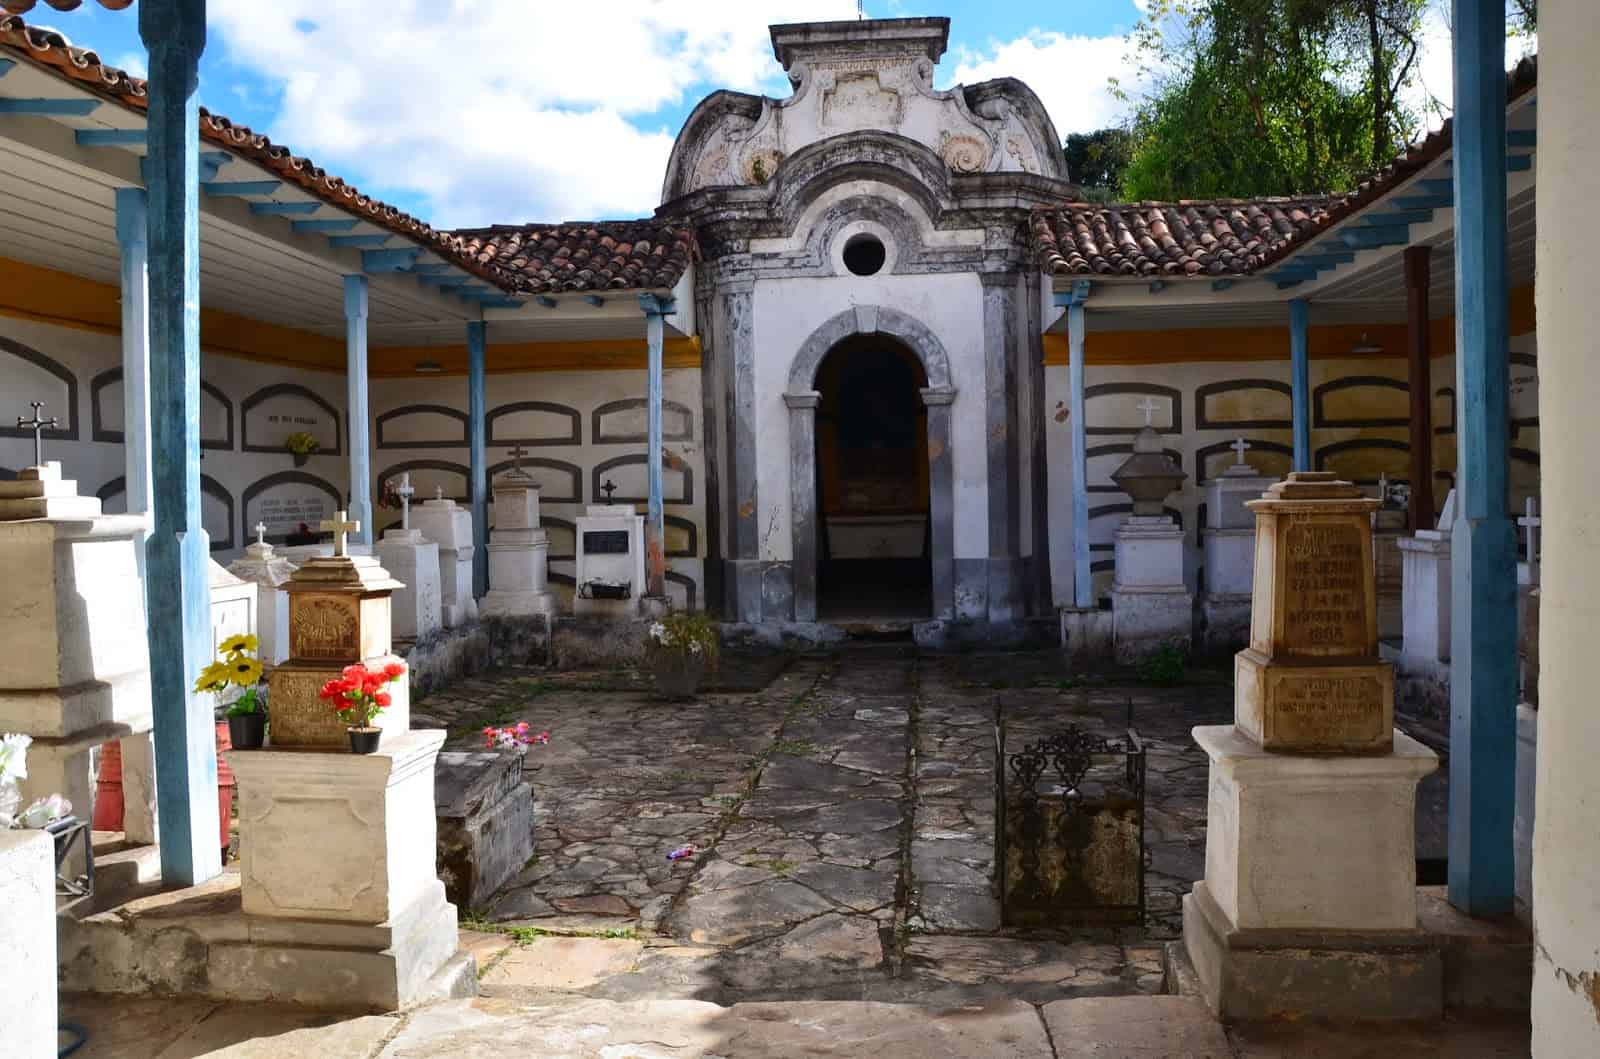 Cemitério São Francisco de Assis in Ouro Preto, Brazil